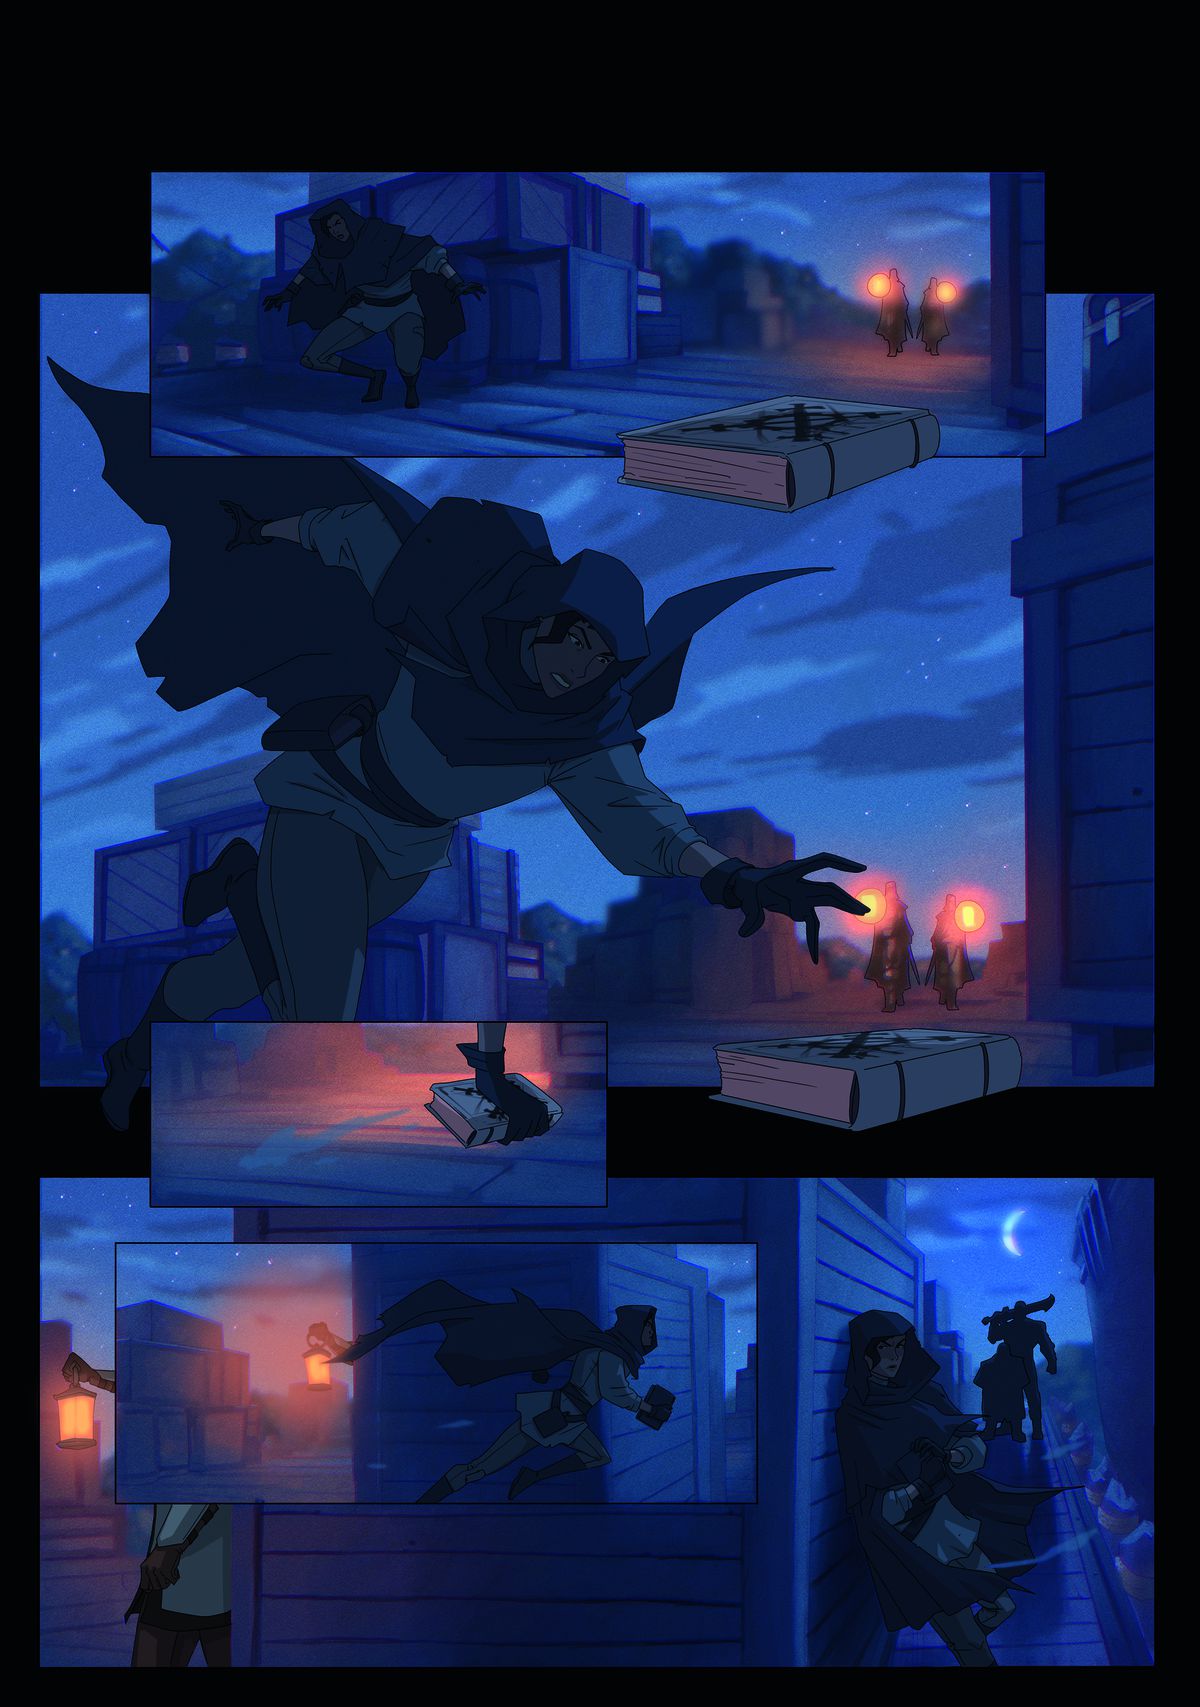 Un personnage cagoulé court dans une ville sombre dans ces panneaux de bandes dessinées. 